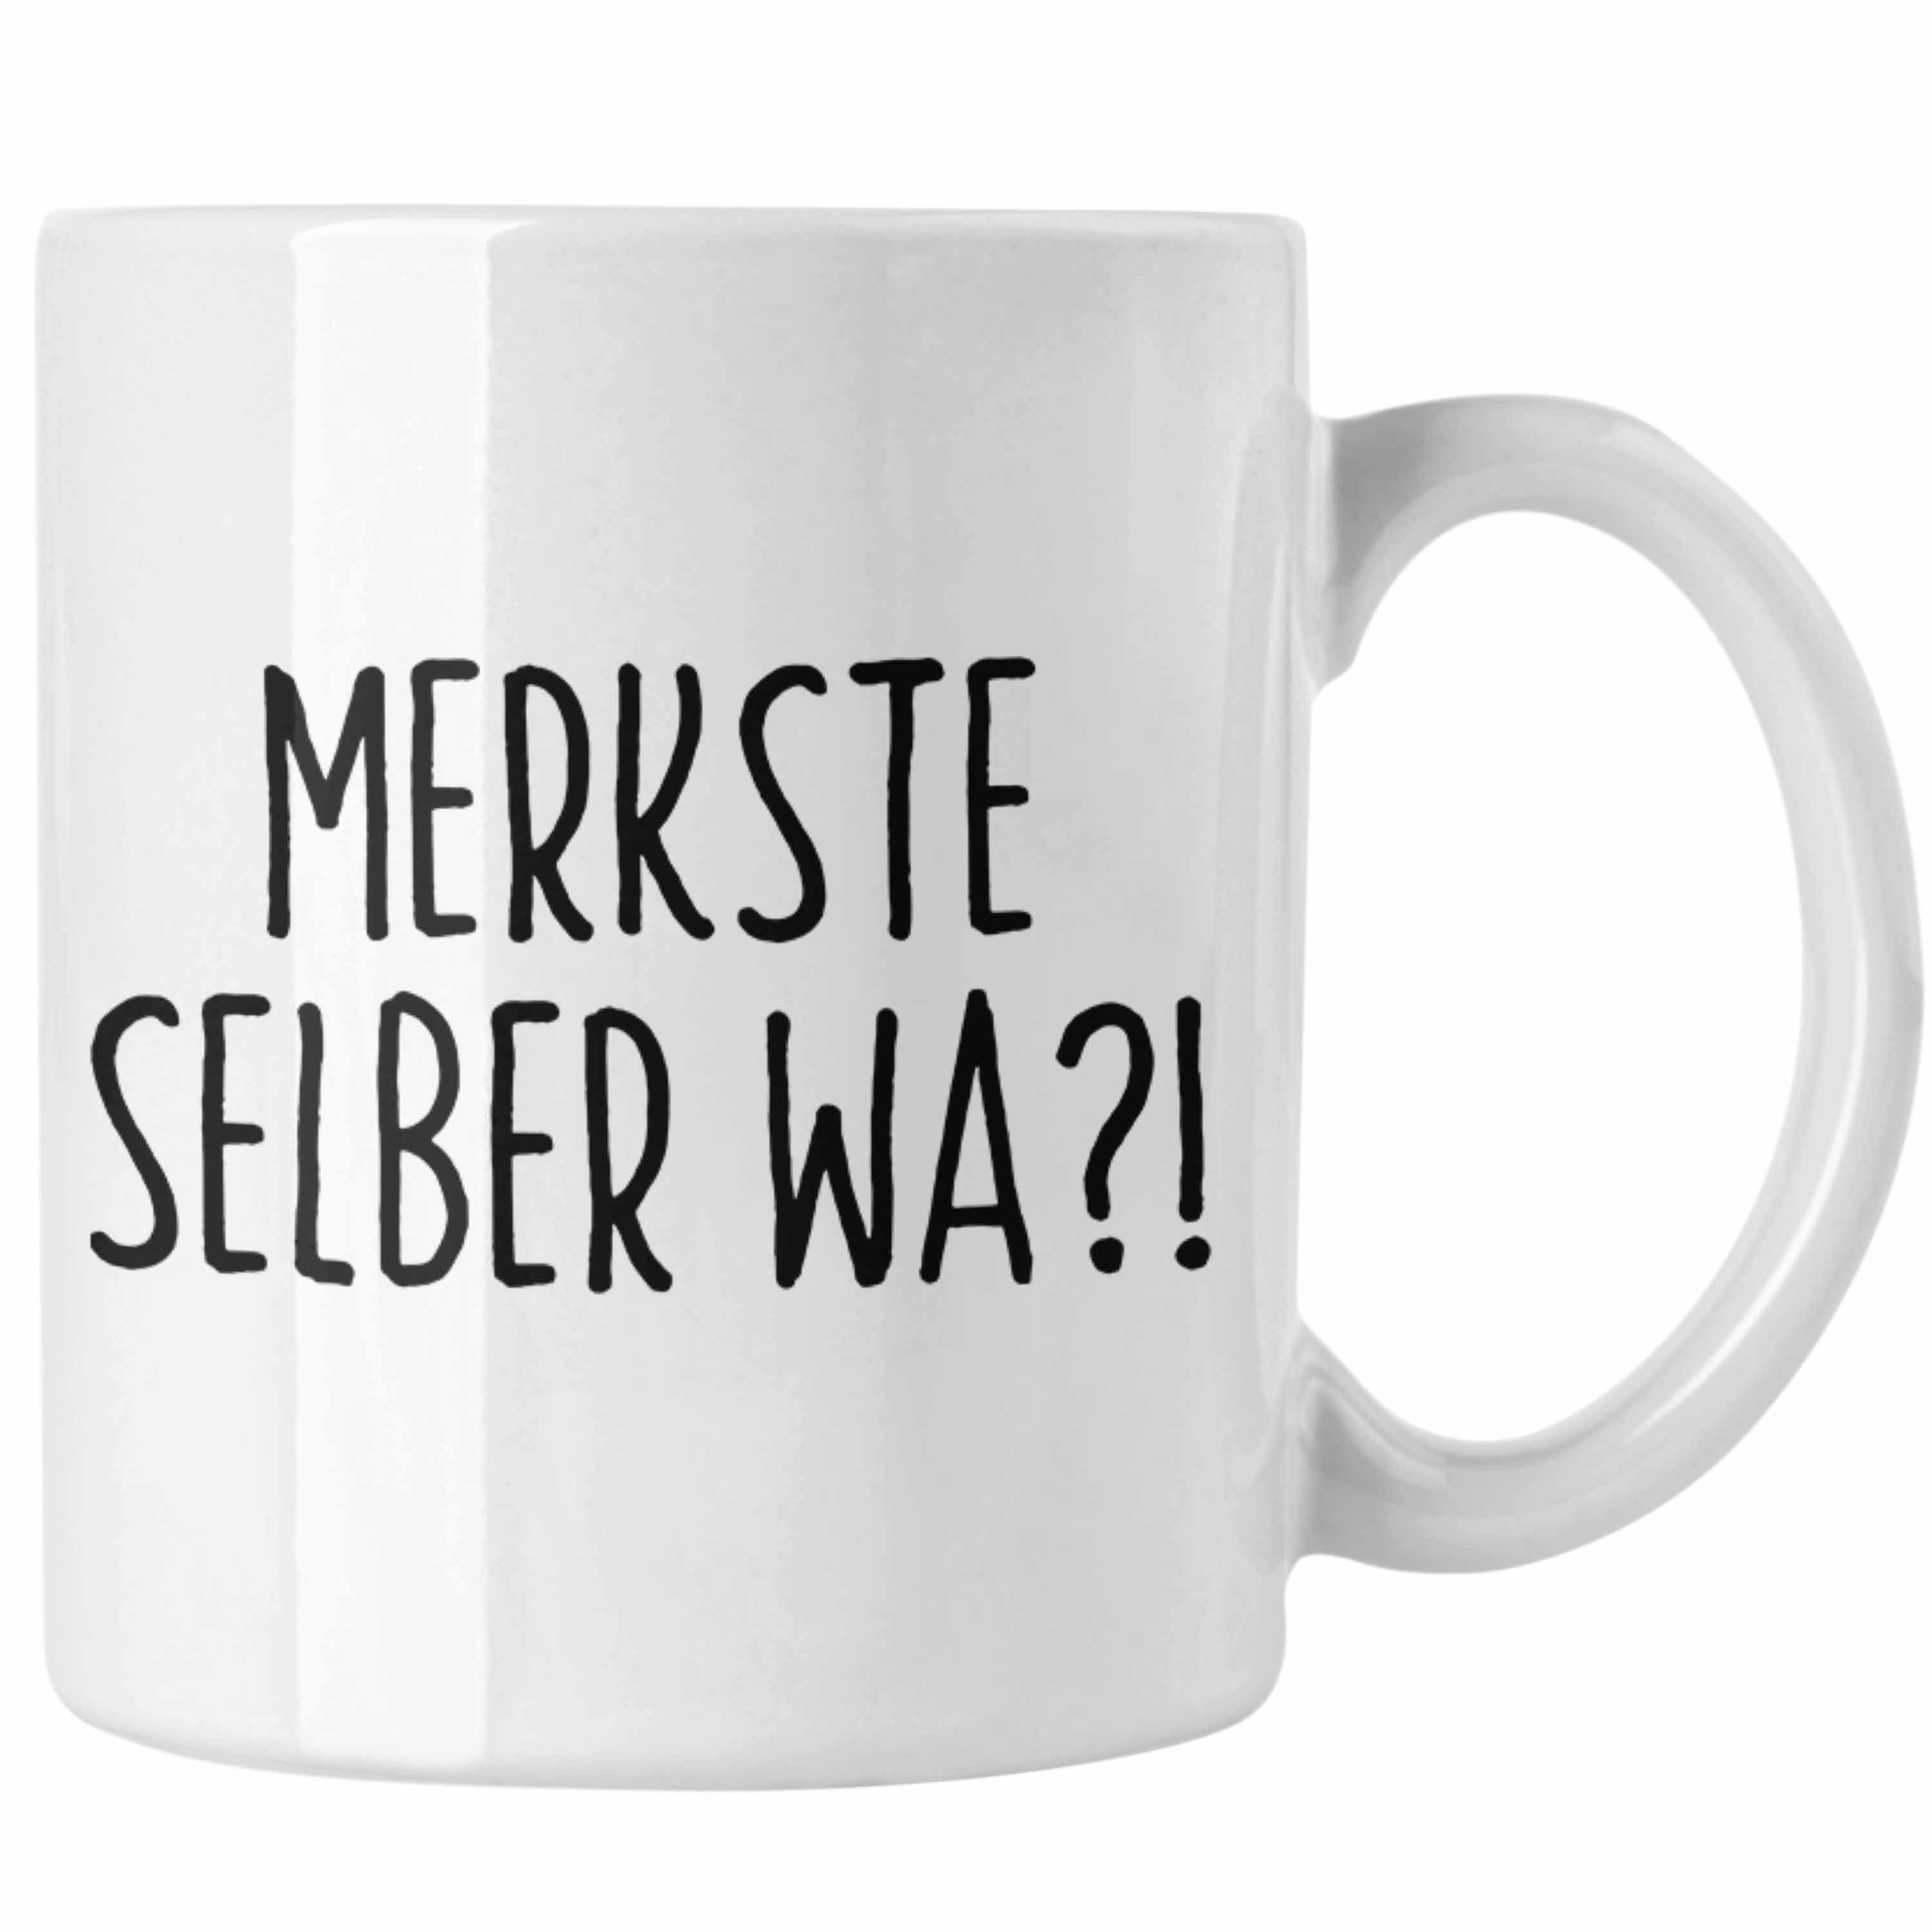 Trendation Tasse Merkste Selber Wa Tasse Geschenk Kaffeebecher mit Spruch Büro Humor Weiss